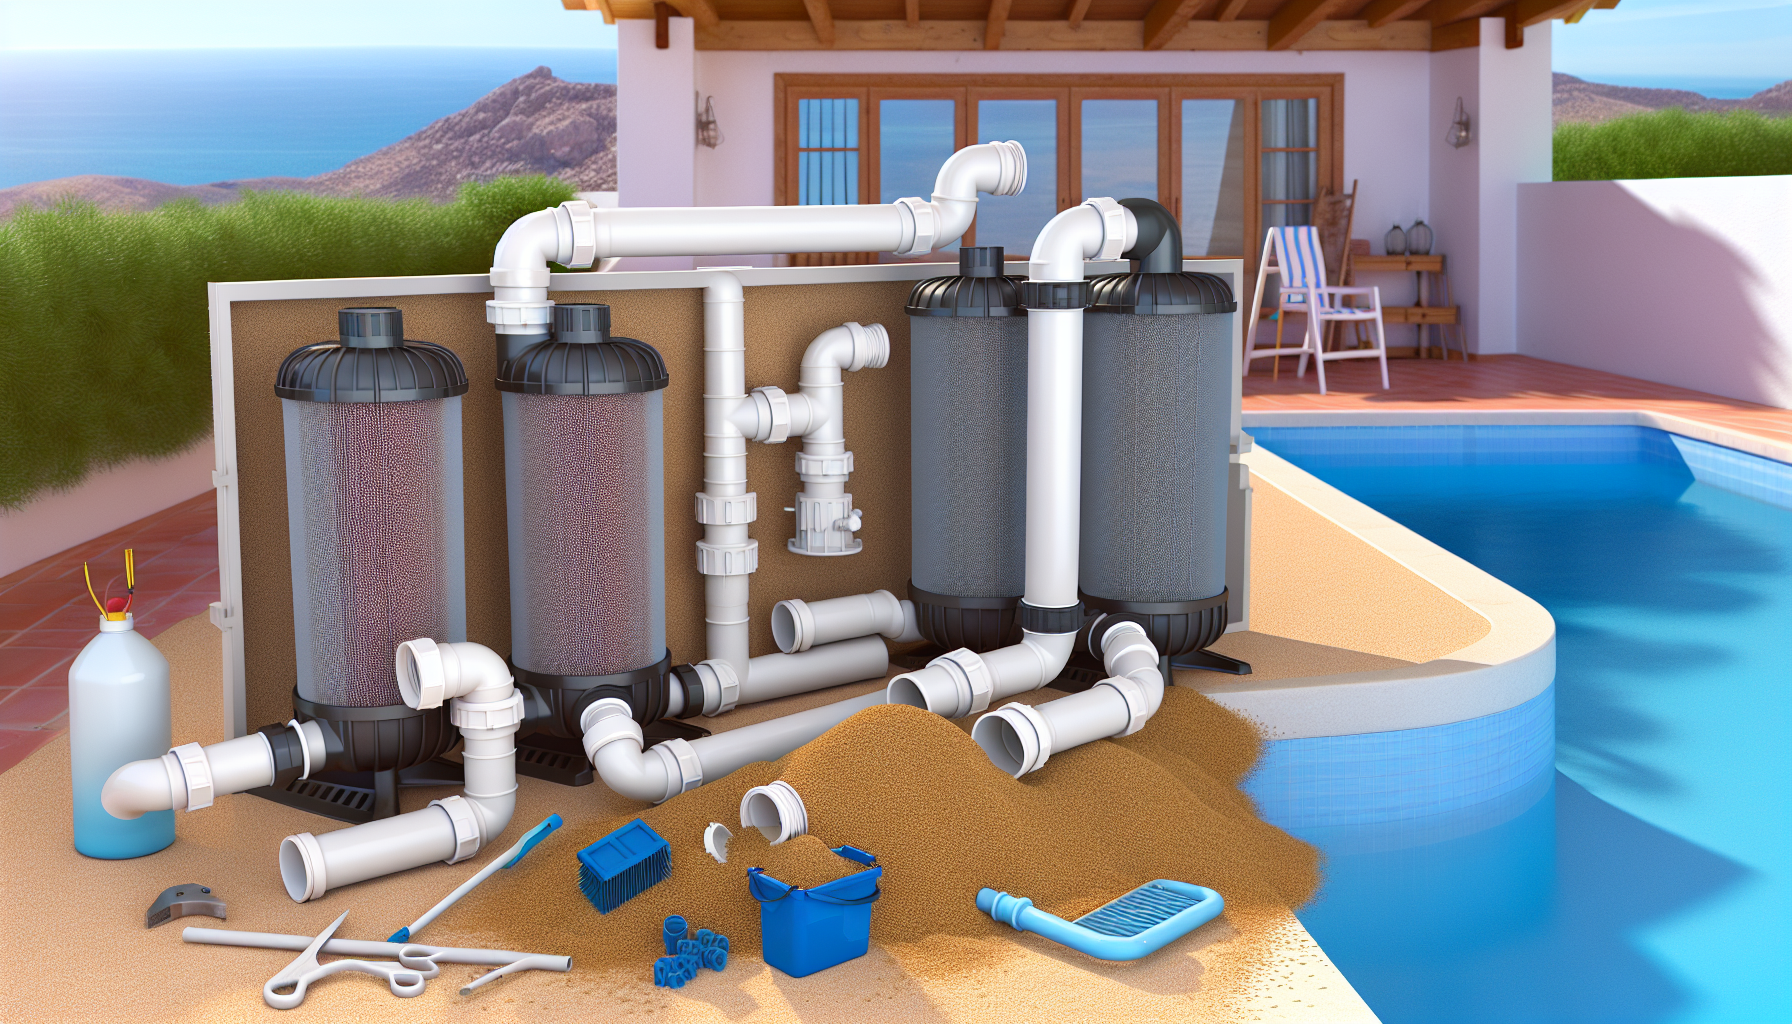 Pool-Filteranlage mit Rohren und Werkzeugen auf einer Terrasse neben einem Swimmingpool.